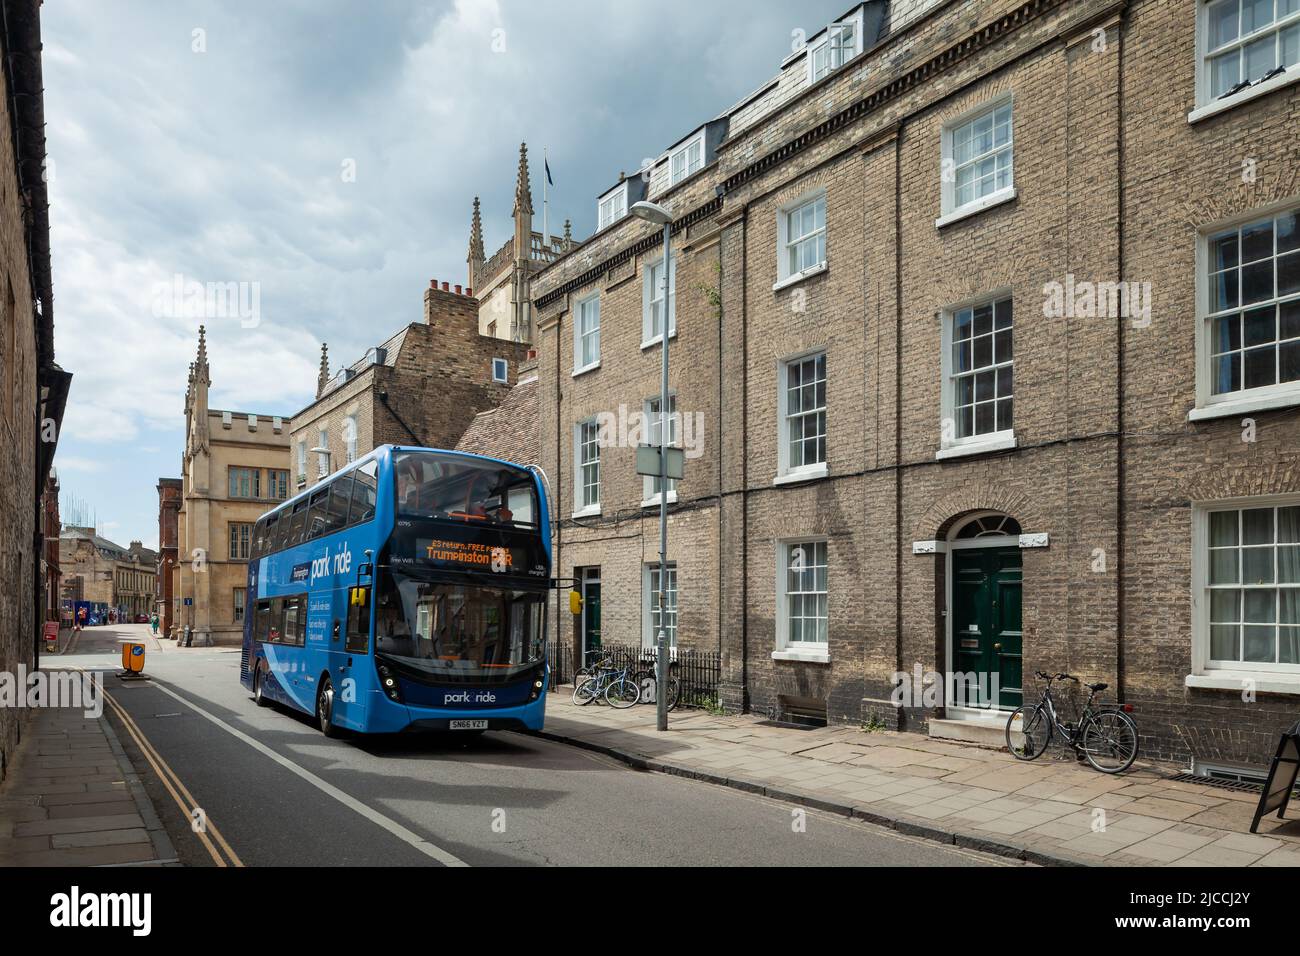 Double decker bus in Cambridge city centre, England. Stock Photo